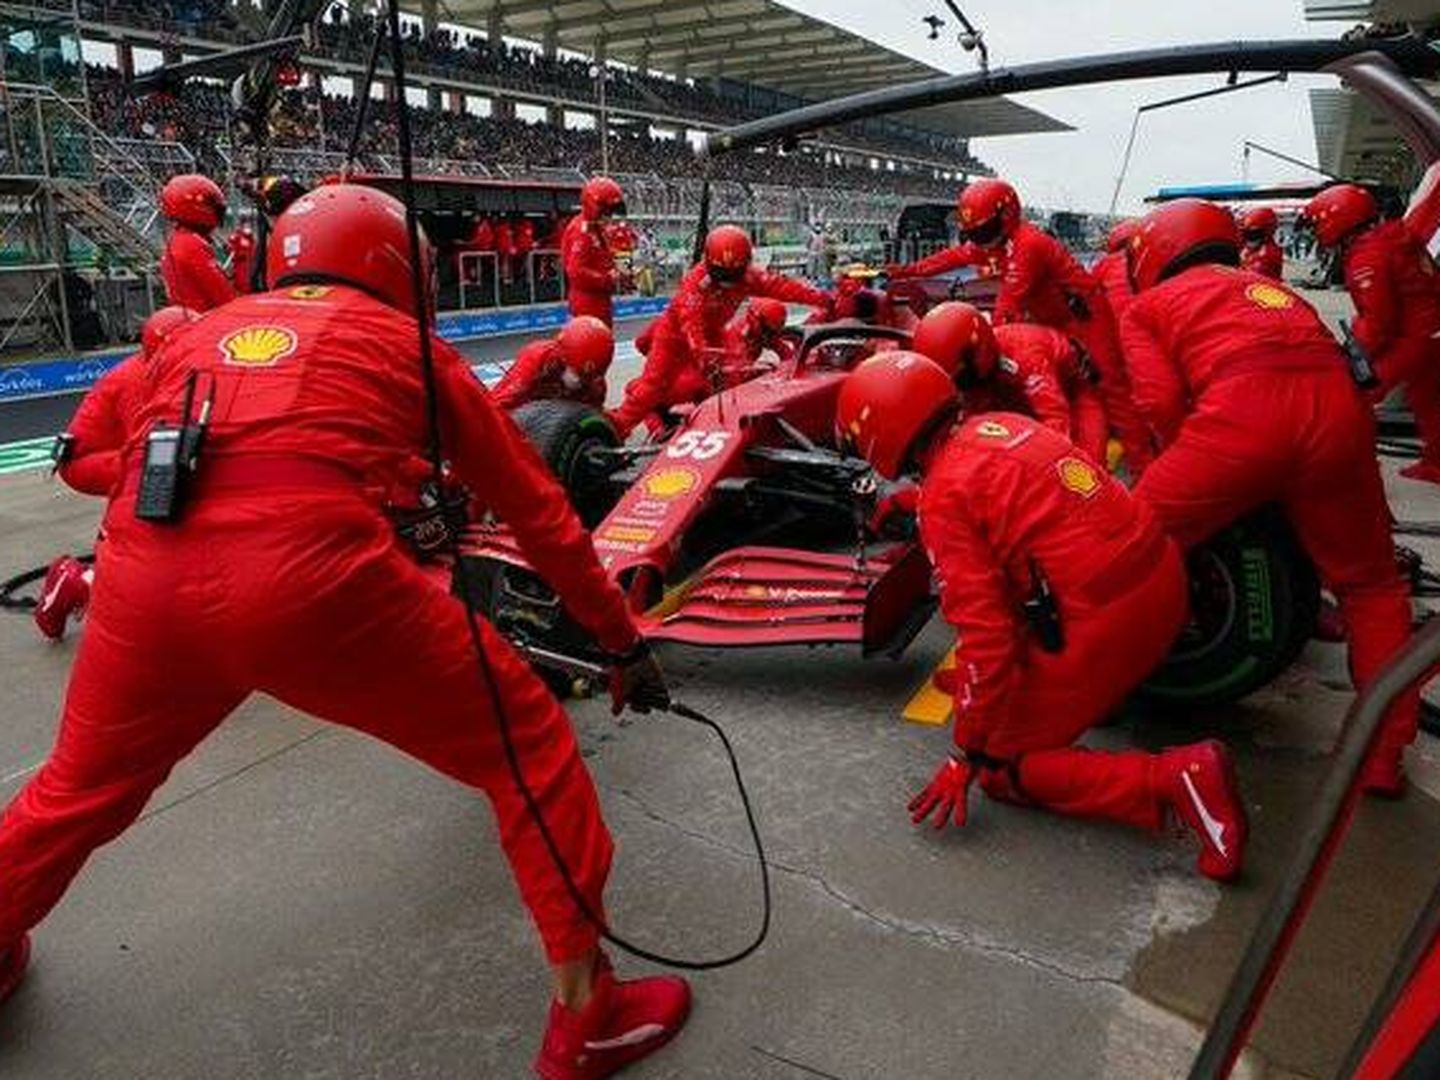 La remontada de Sainz confirmaba la evolución de Ferrari con su motor, aunque la parada en boxes frenara un mejor resultado